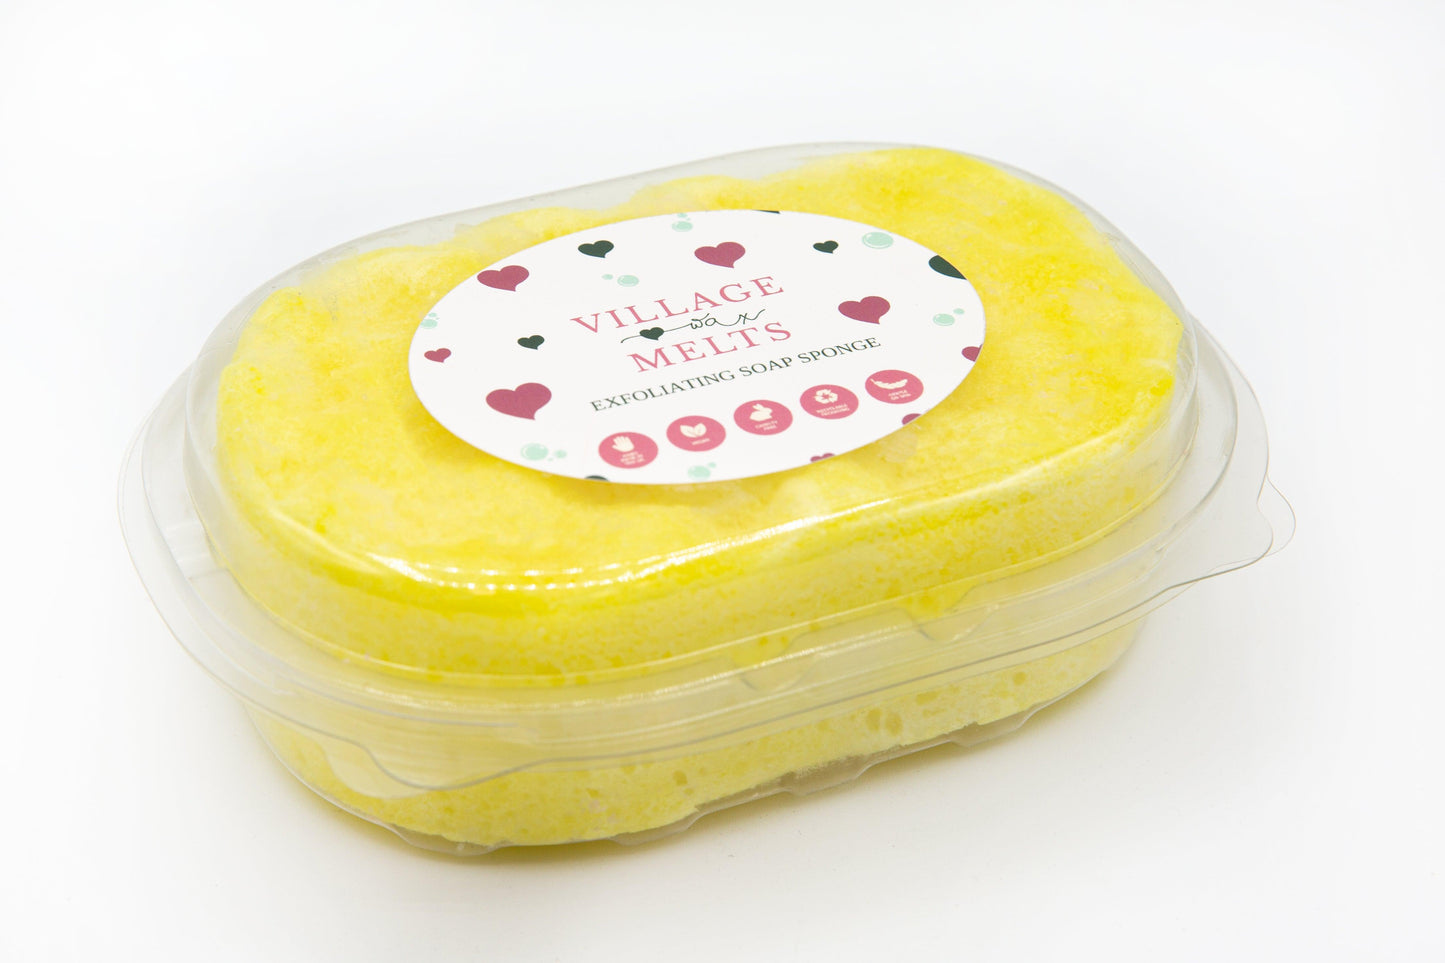 Lemon Have a Bath Exfoliating Soap Sponge - Village Wax Melts